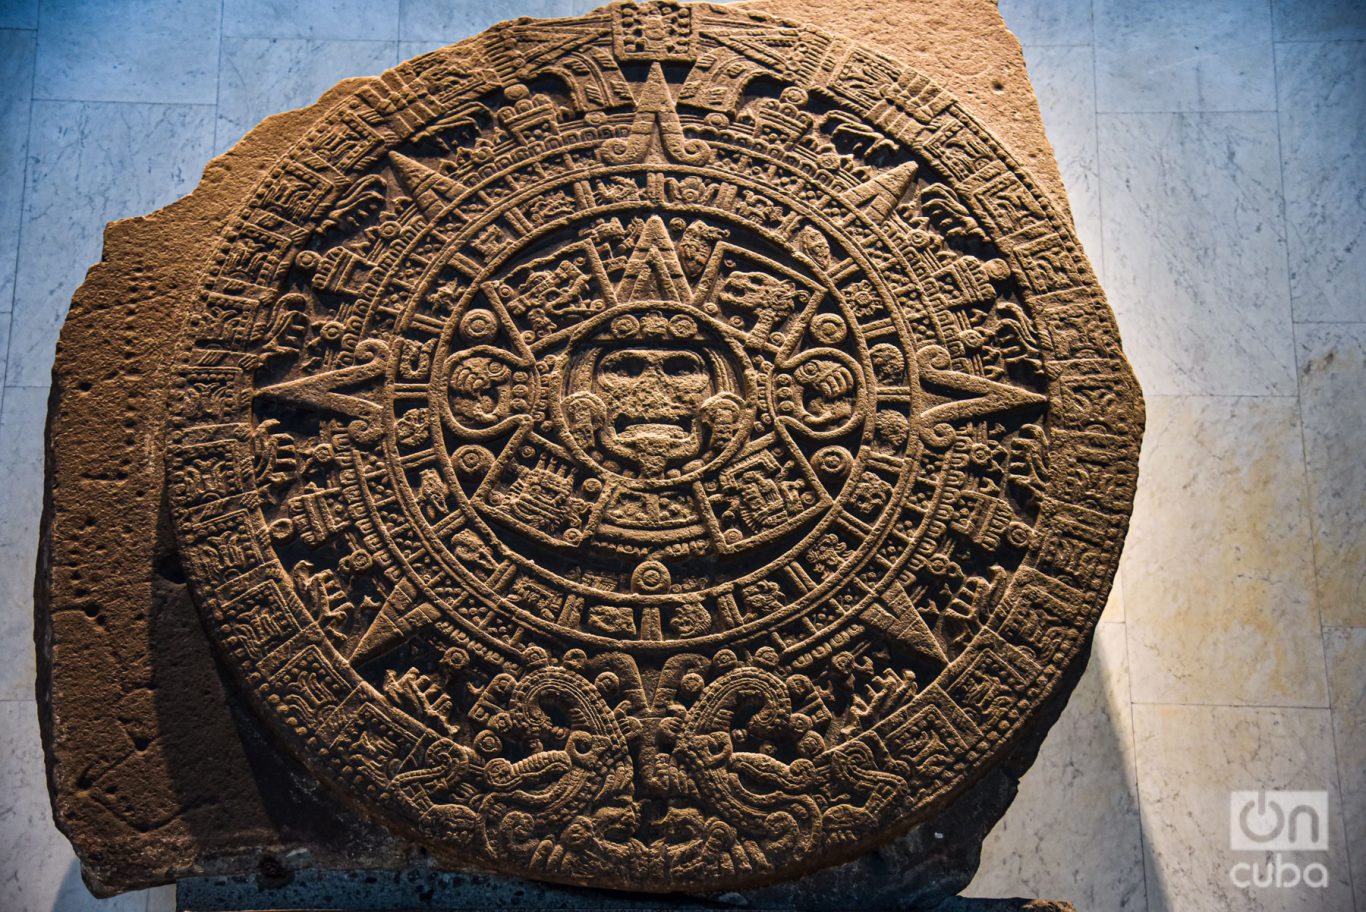 La Piedra del Sol está en la sala mexica. El monolito del posclásico tardío (1250-1521 d.C.) mide 3.58 metros de diámetro y pesa 24 toneladas, aproximadamente. Foto: Kaloian.